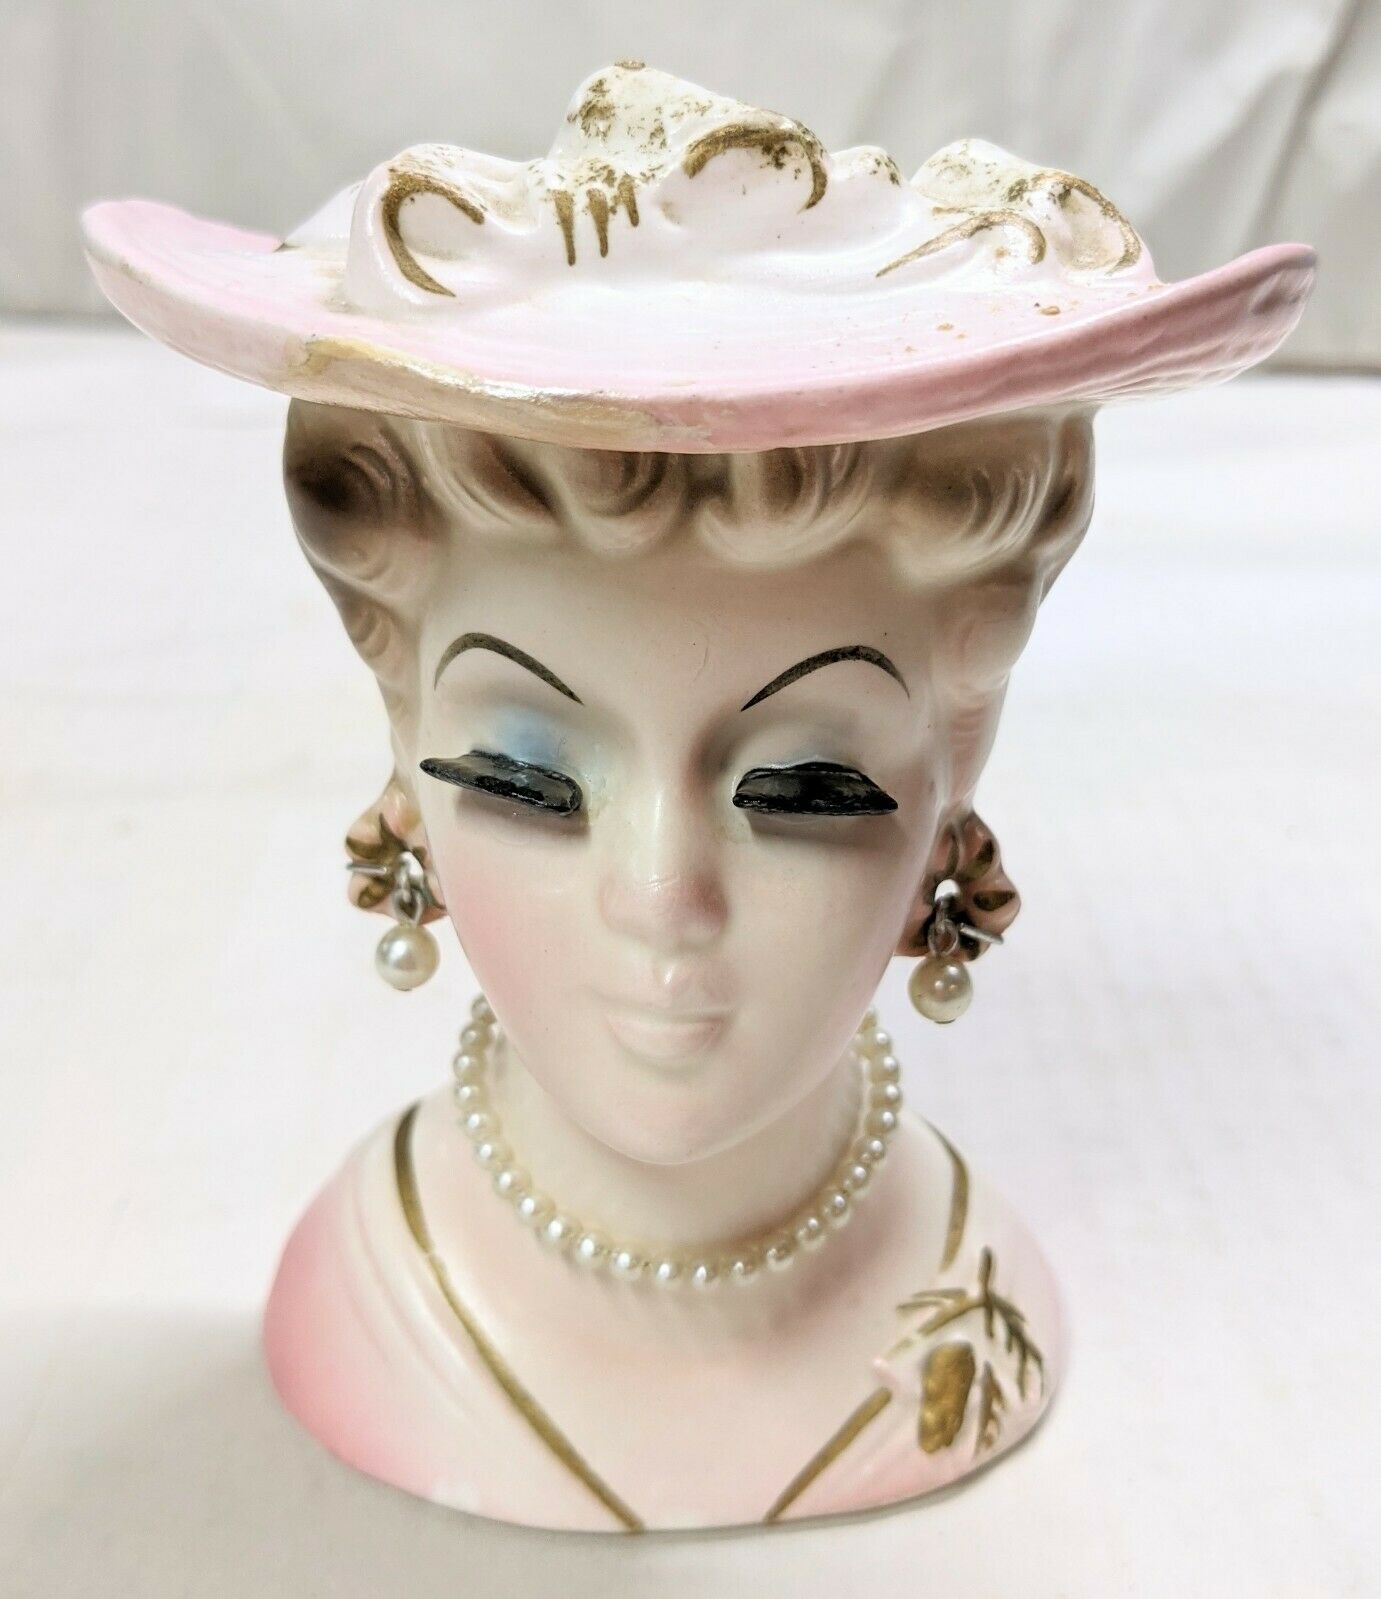 Unusual Vintage Lady Head Vase Pink Gold Pearls Pinecone Painted Brooch 1950's